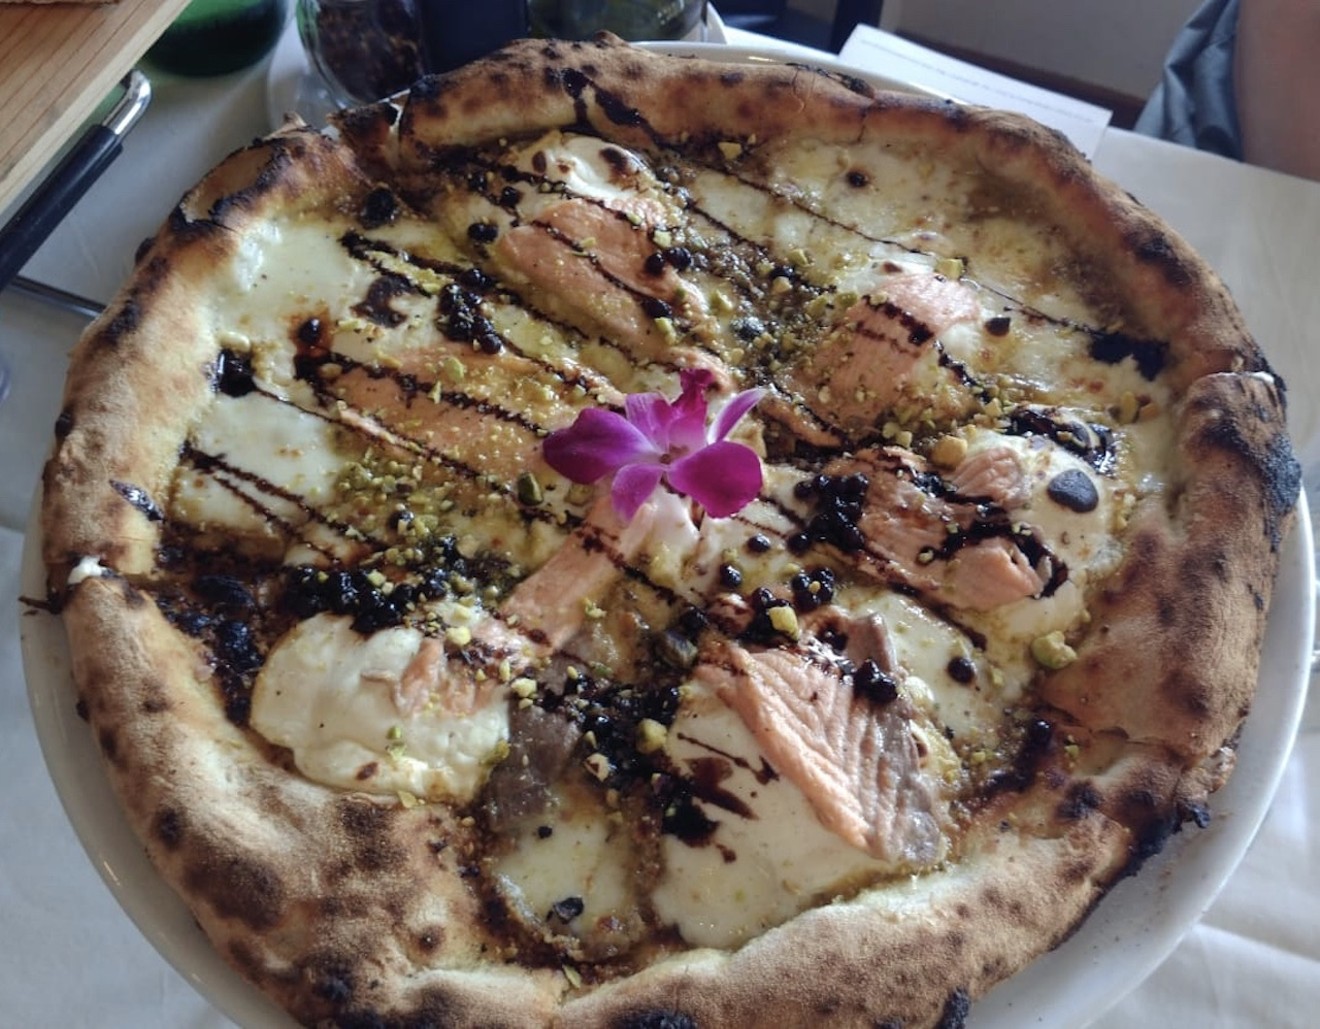 Vianello pizza at New Capri Style.